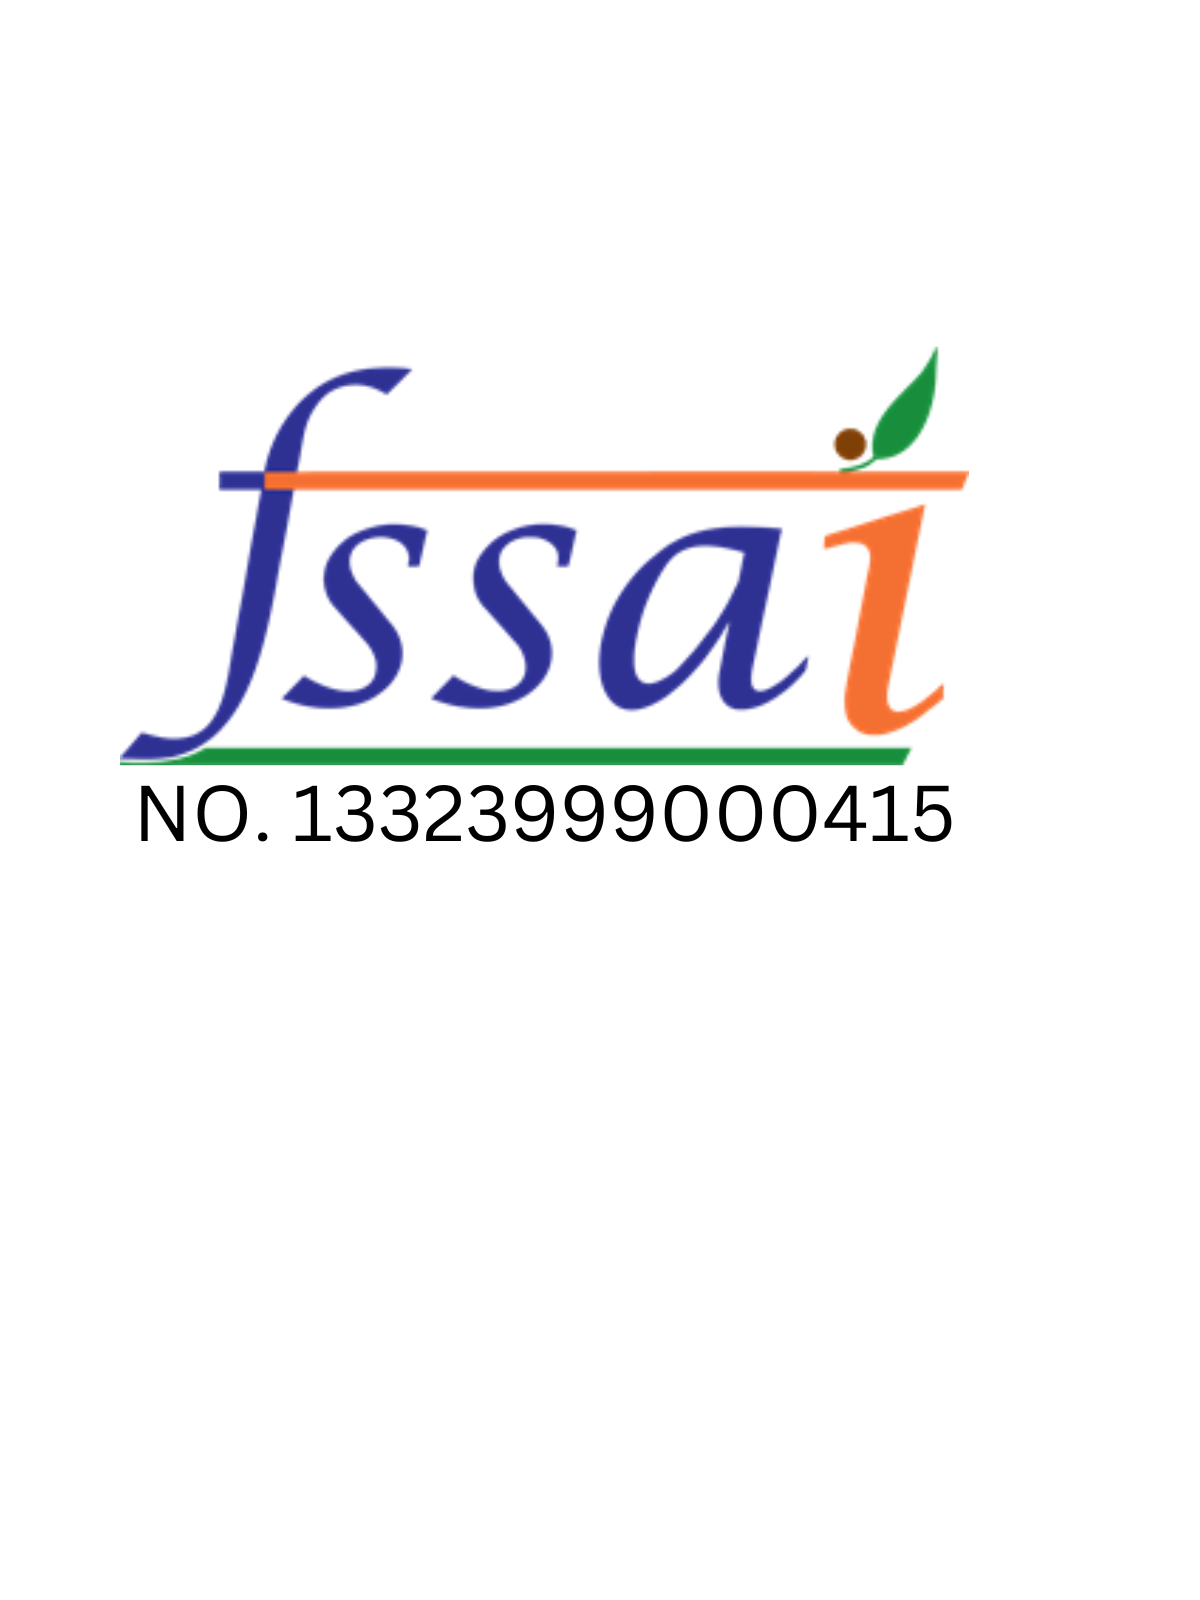 Fssai license No. of Farmonics